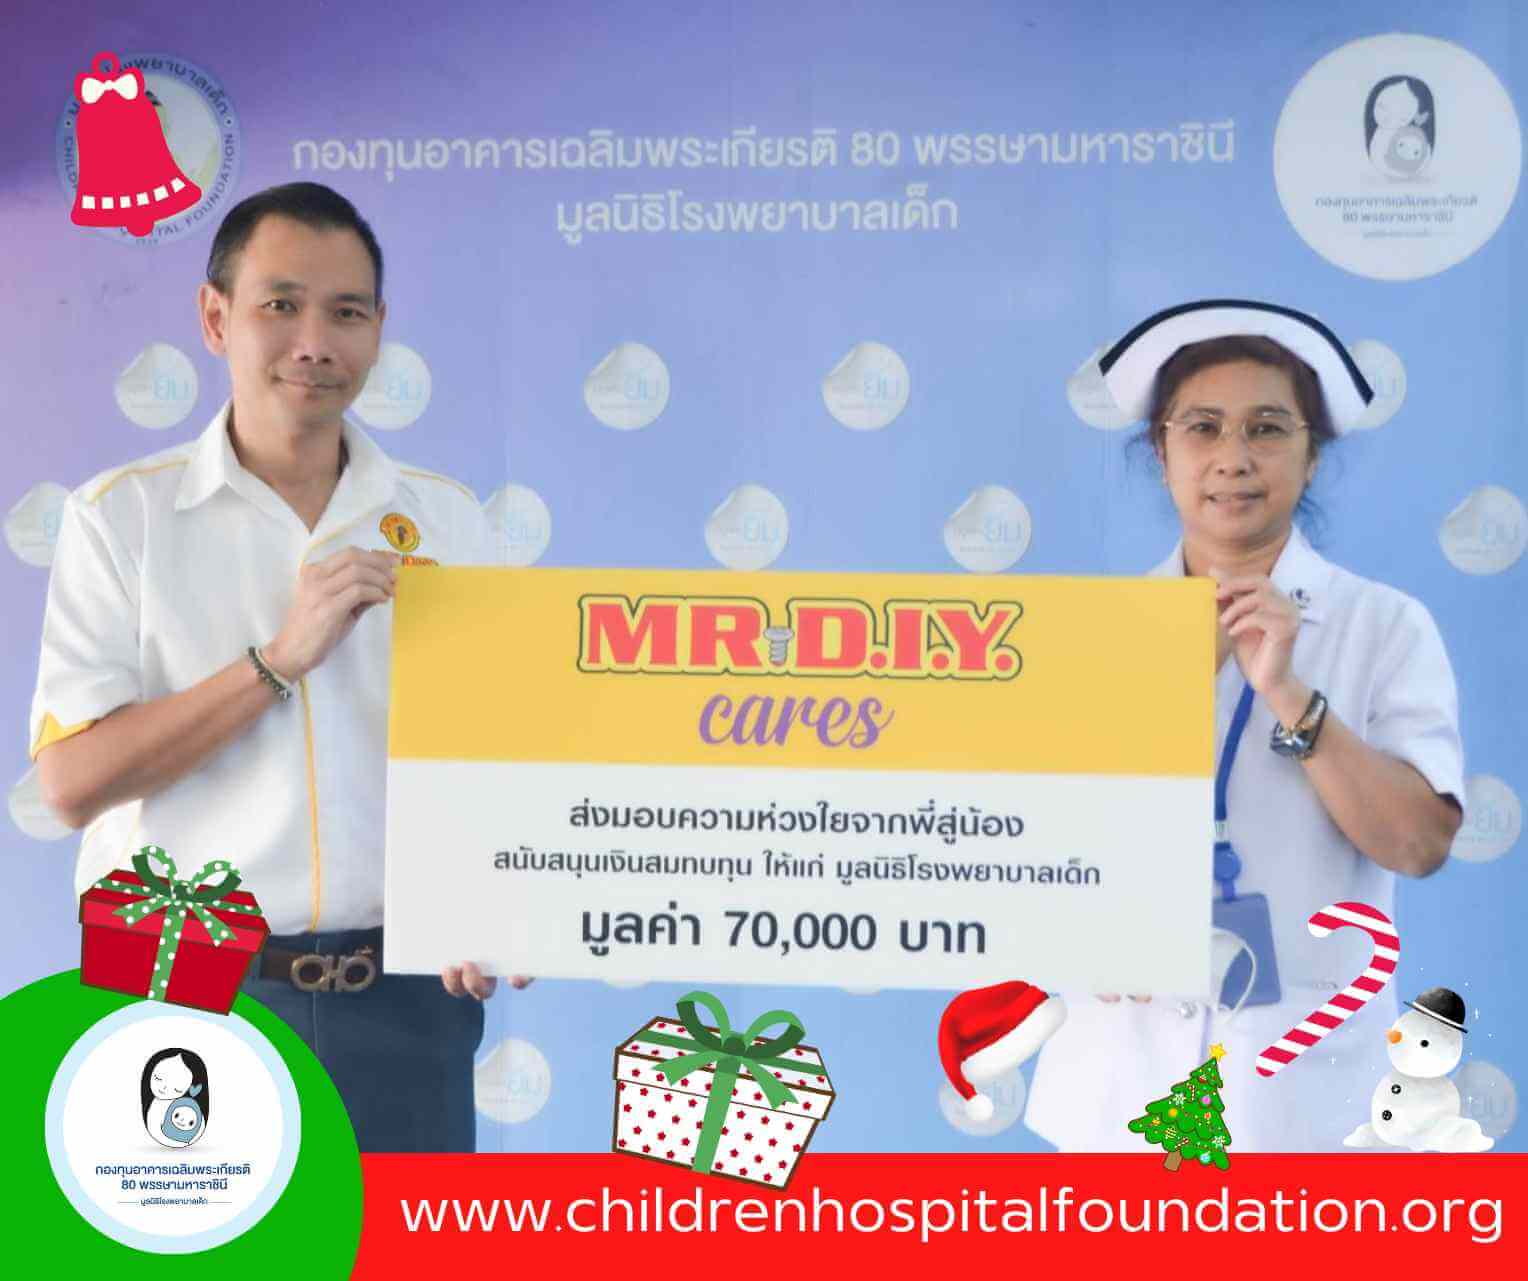 มิสเตอร์. ดี.ไอ.วาย. เทรดดิ้ง (ประเทศไทย) สนับสนุนสุขภาพที่ดีให้เด็กไทย